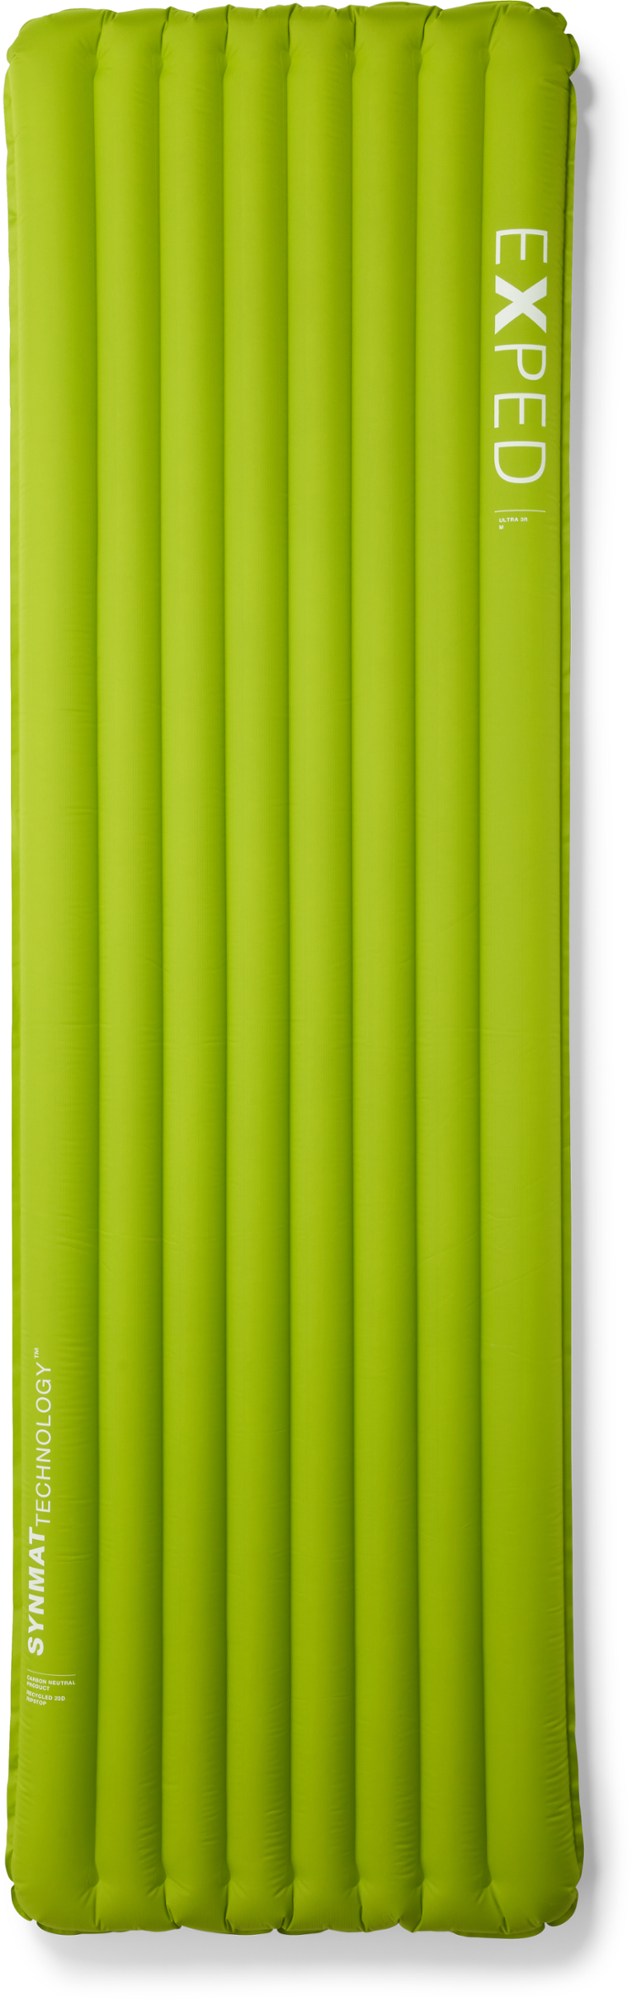 Спальный коврик Ультра 3R Exped, зеленый